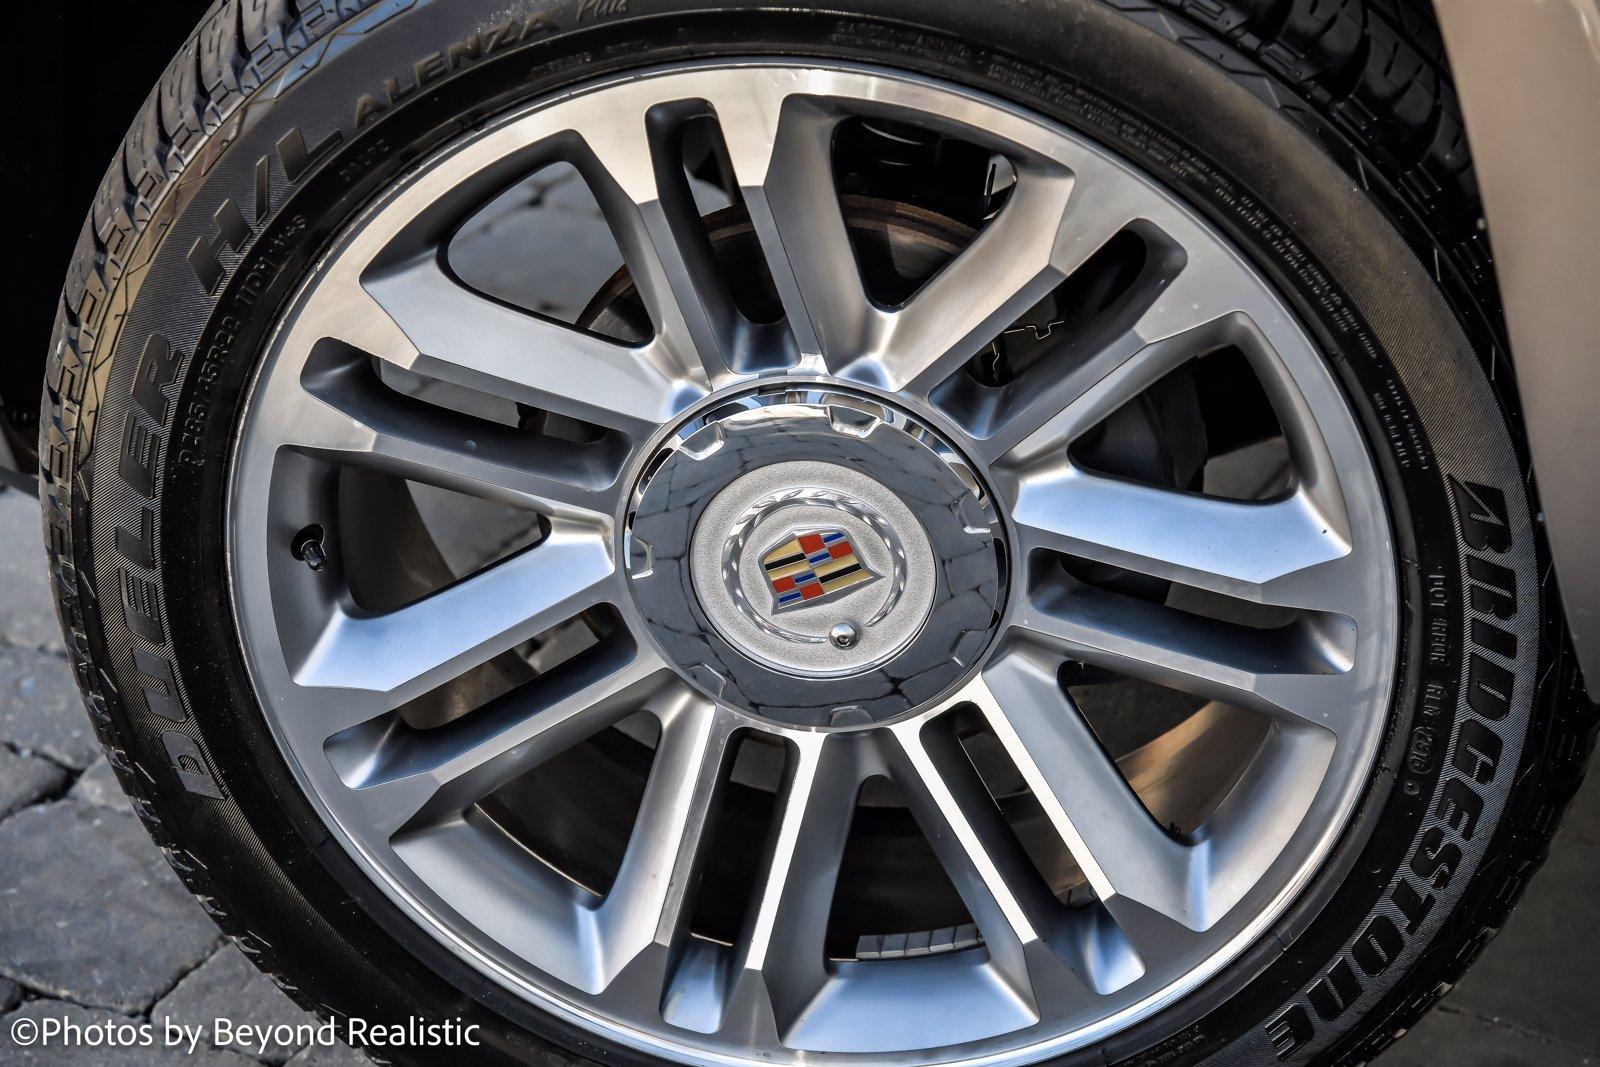 Used 2014 Cadillac Escalade ESV Premium | Downers Grove, IL